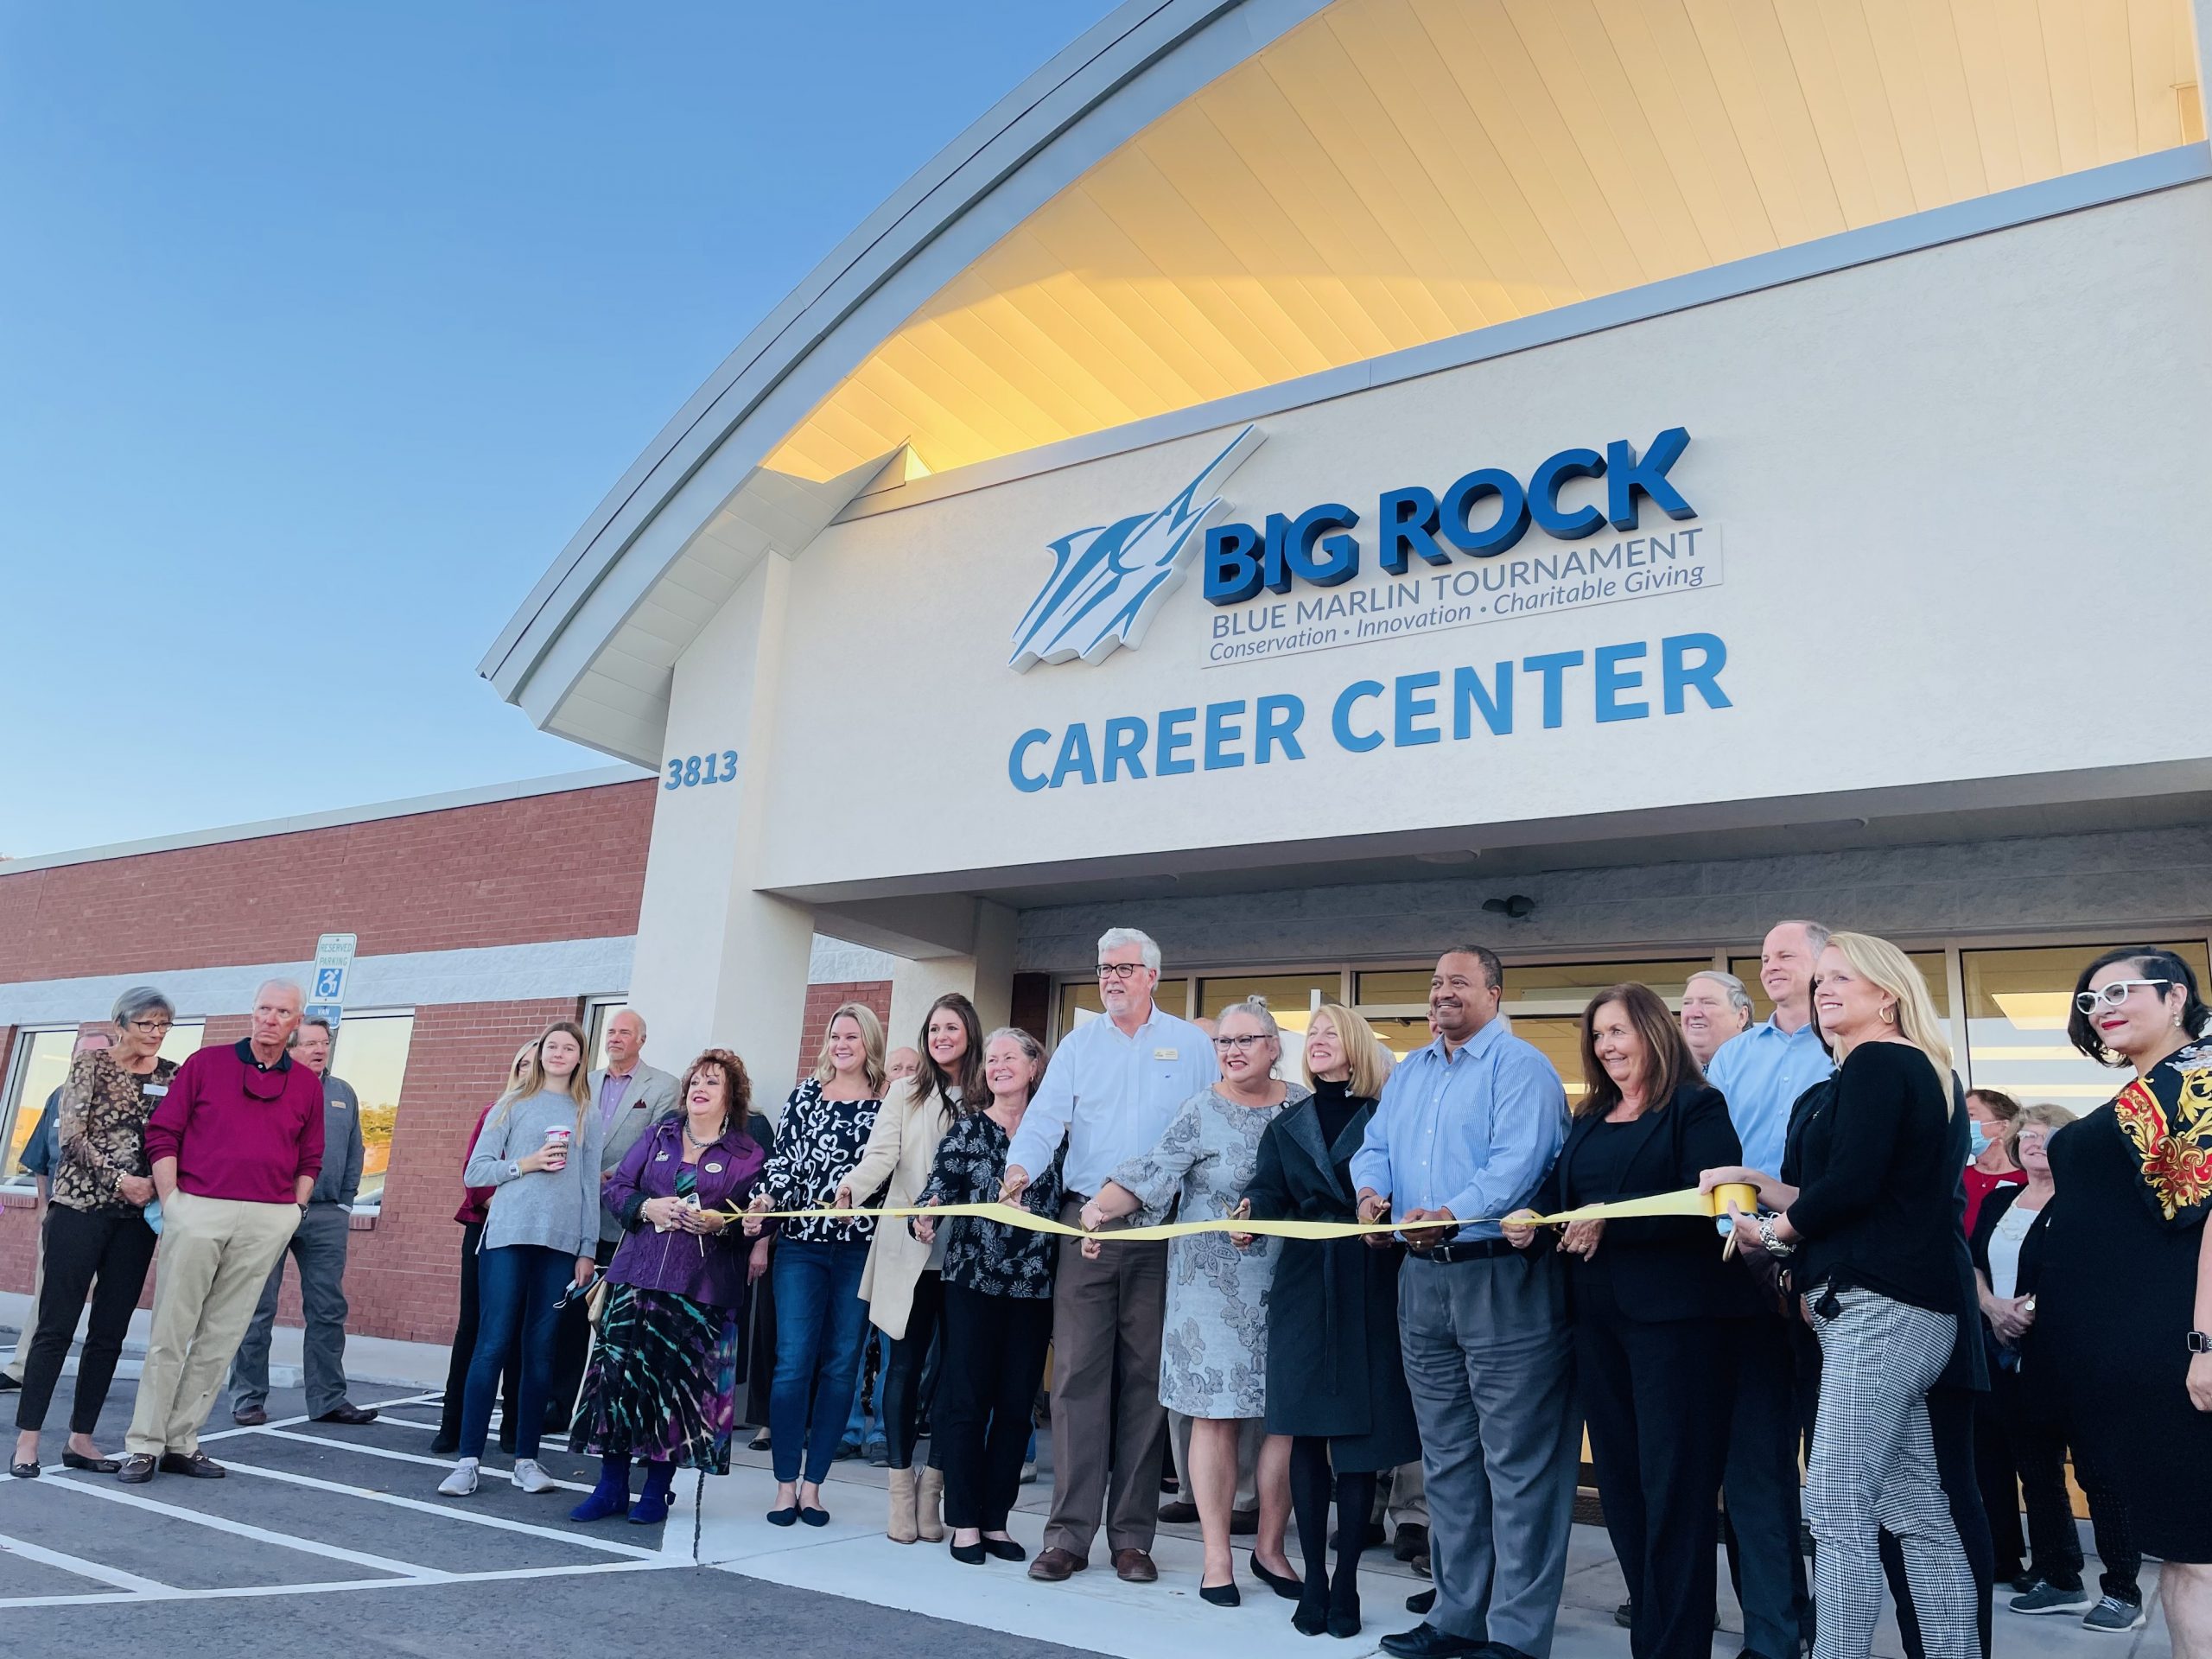 Big Rock Career Center